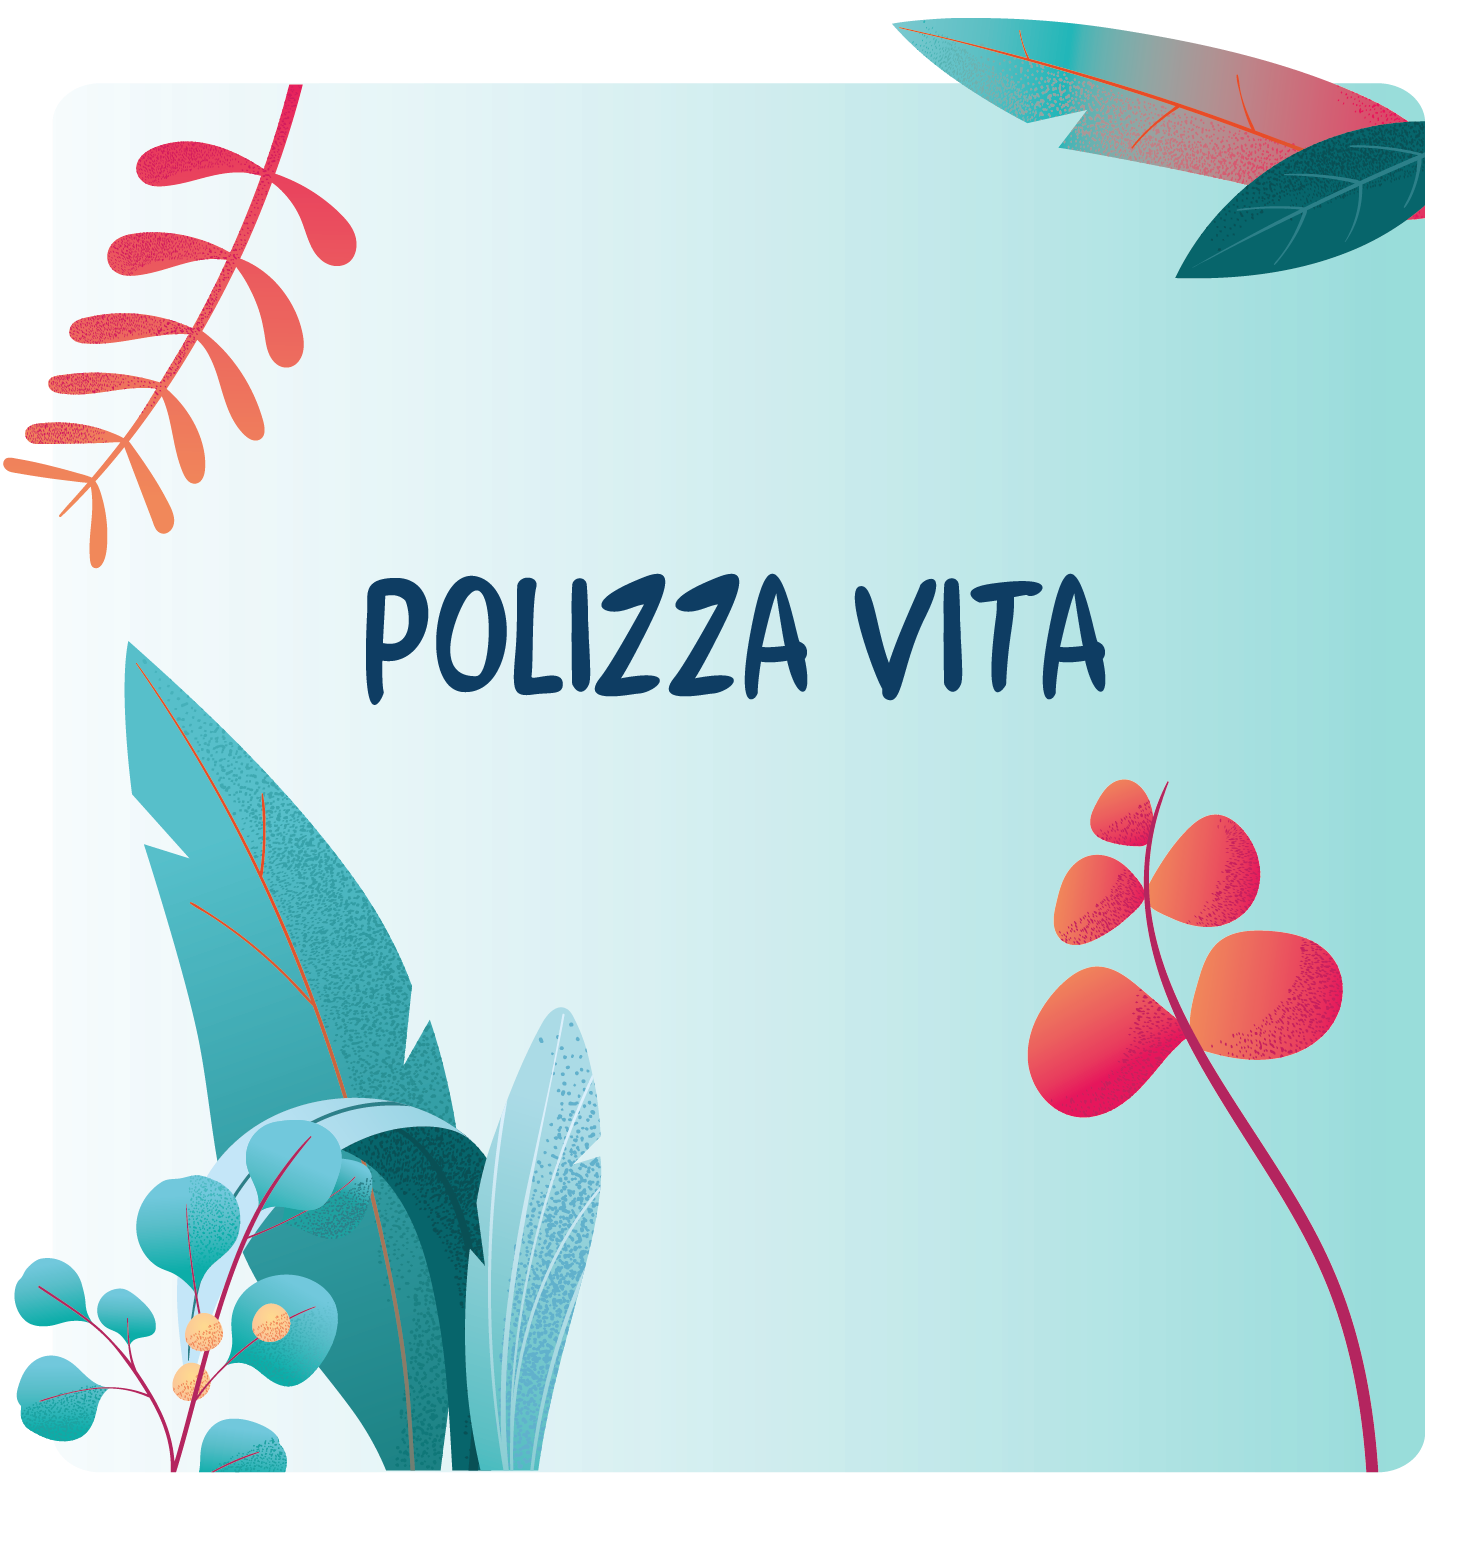 polizza-vita-.png